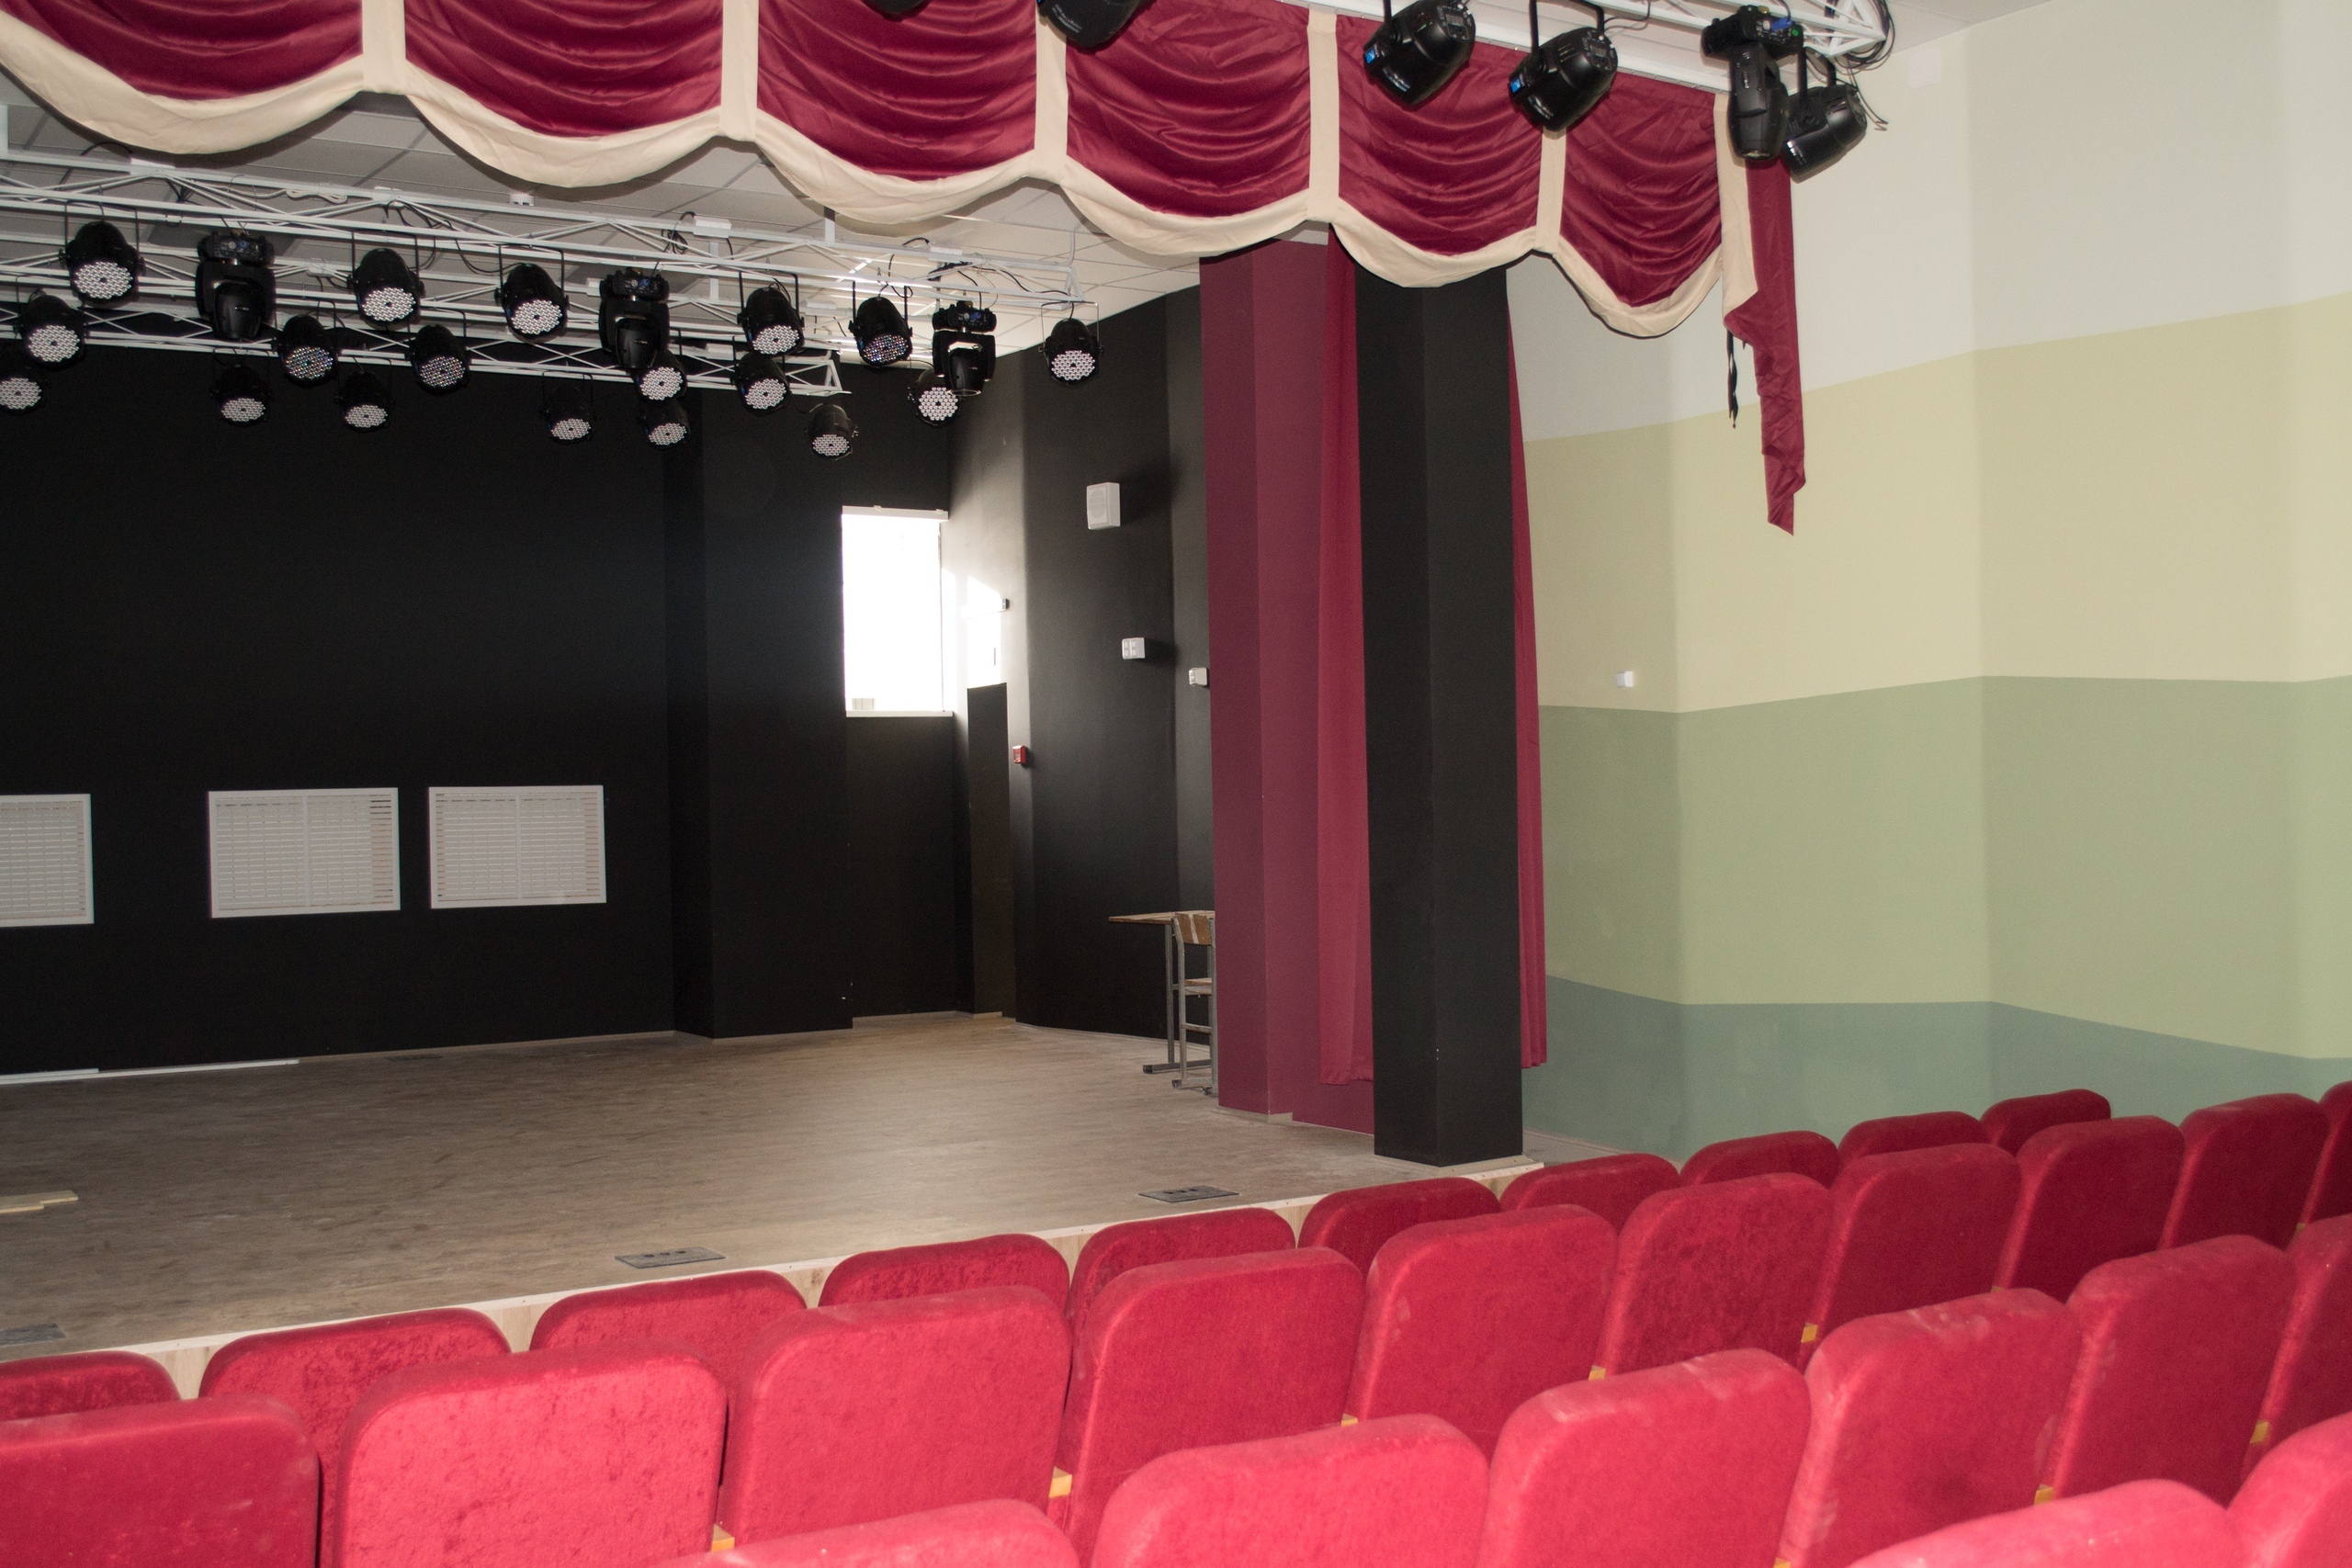 В центре есть большой актовый зал, где можно проводить концерты и другие мероприятия